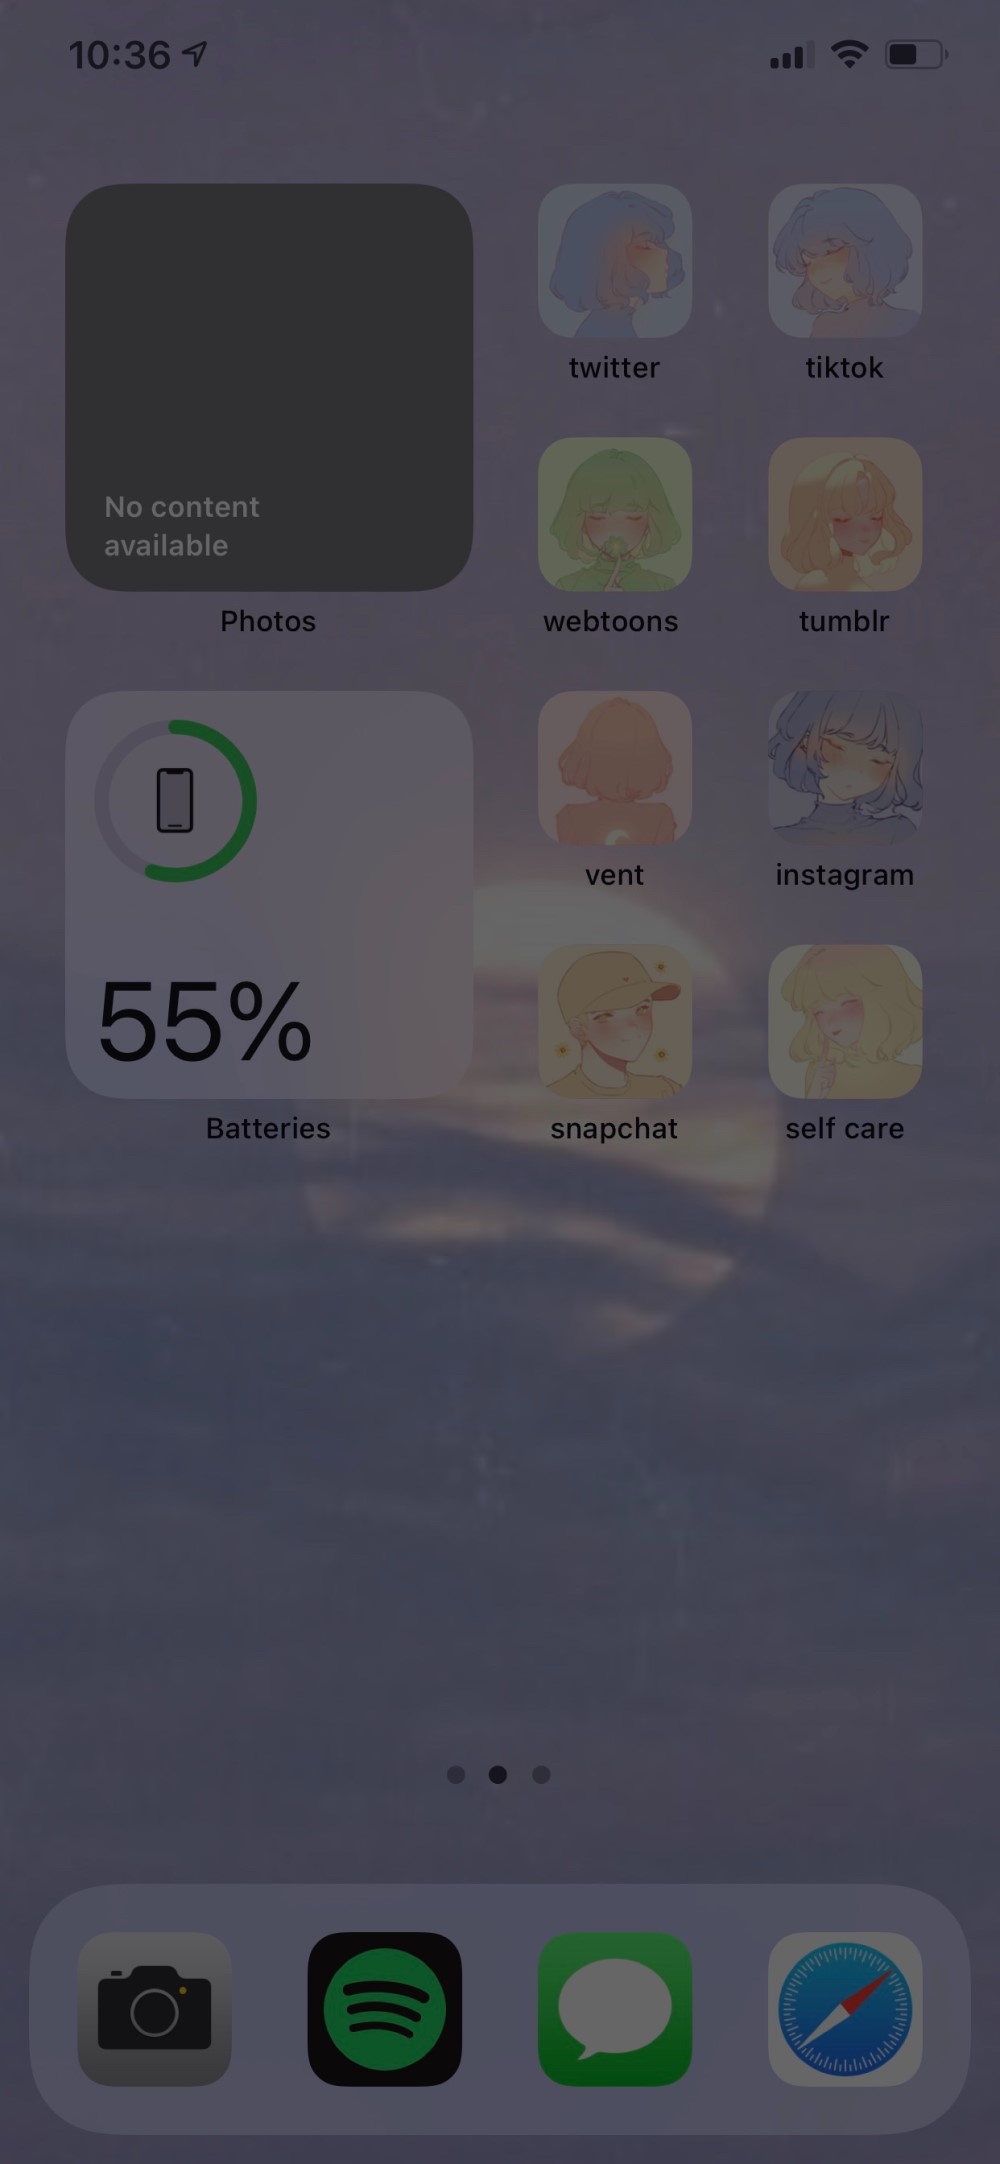 ఐఫోన్- iOS 14 లో డార్క్ స్క్రీన్‌షాట్‌ల సమస్యను పరిష్కరించండి